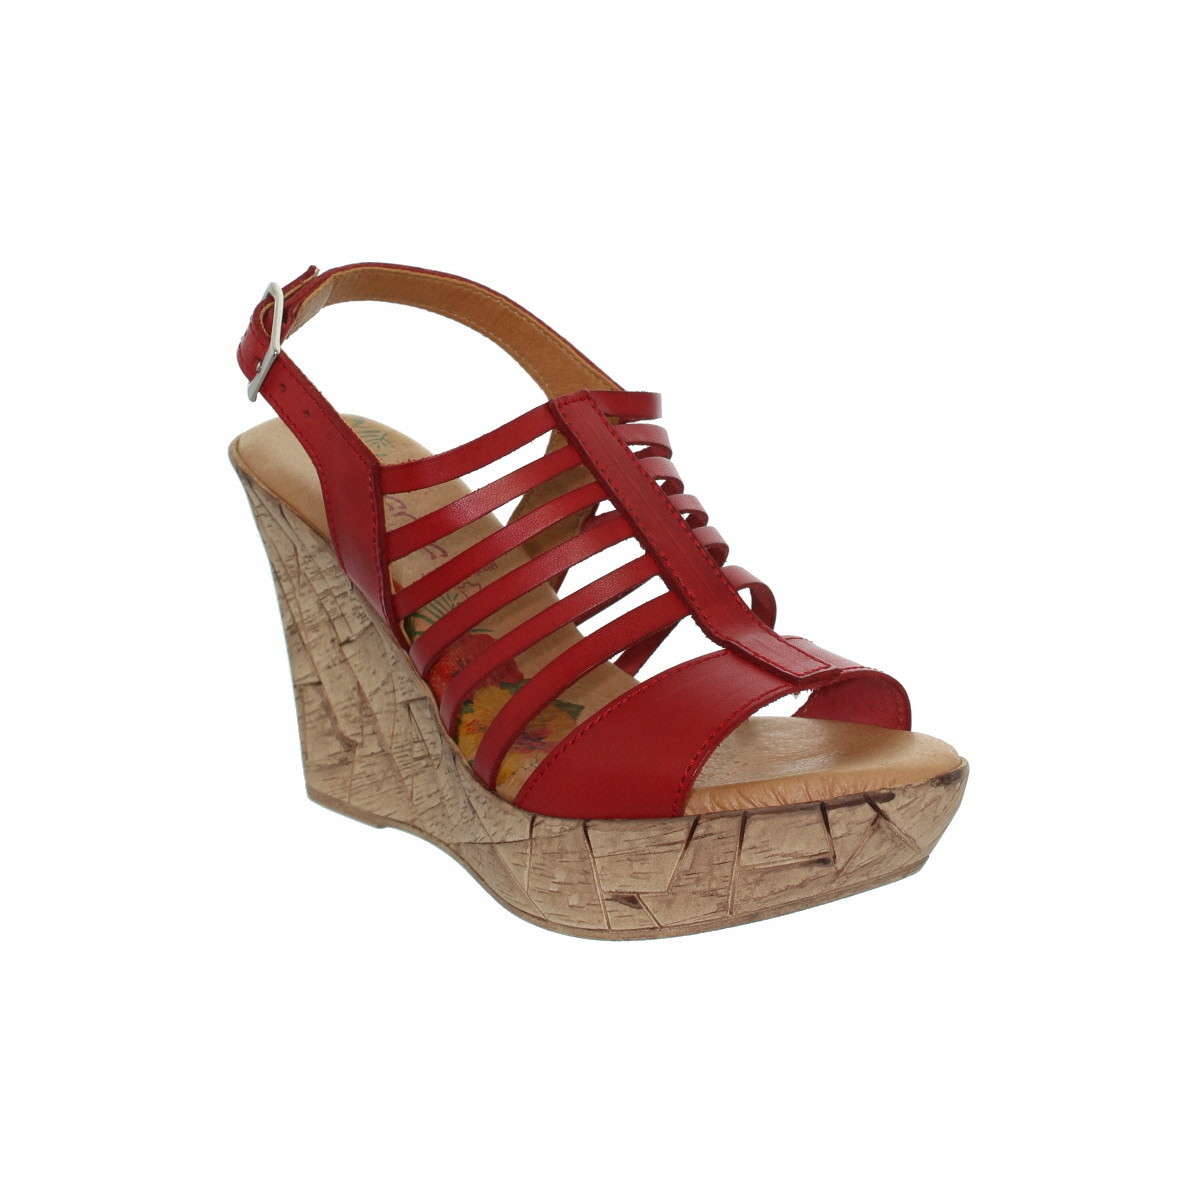 Chaussures Femme Escarpins Marila Talons compensés  ref_neox39489-rouge Rouge